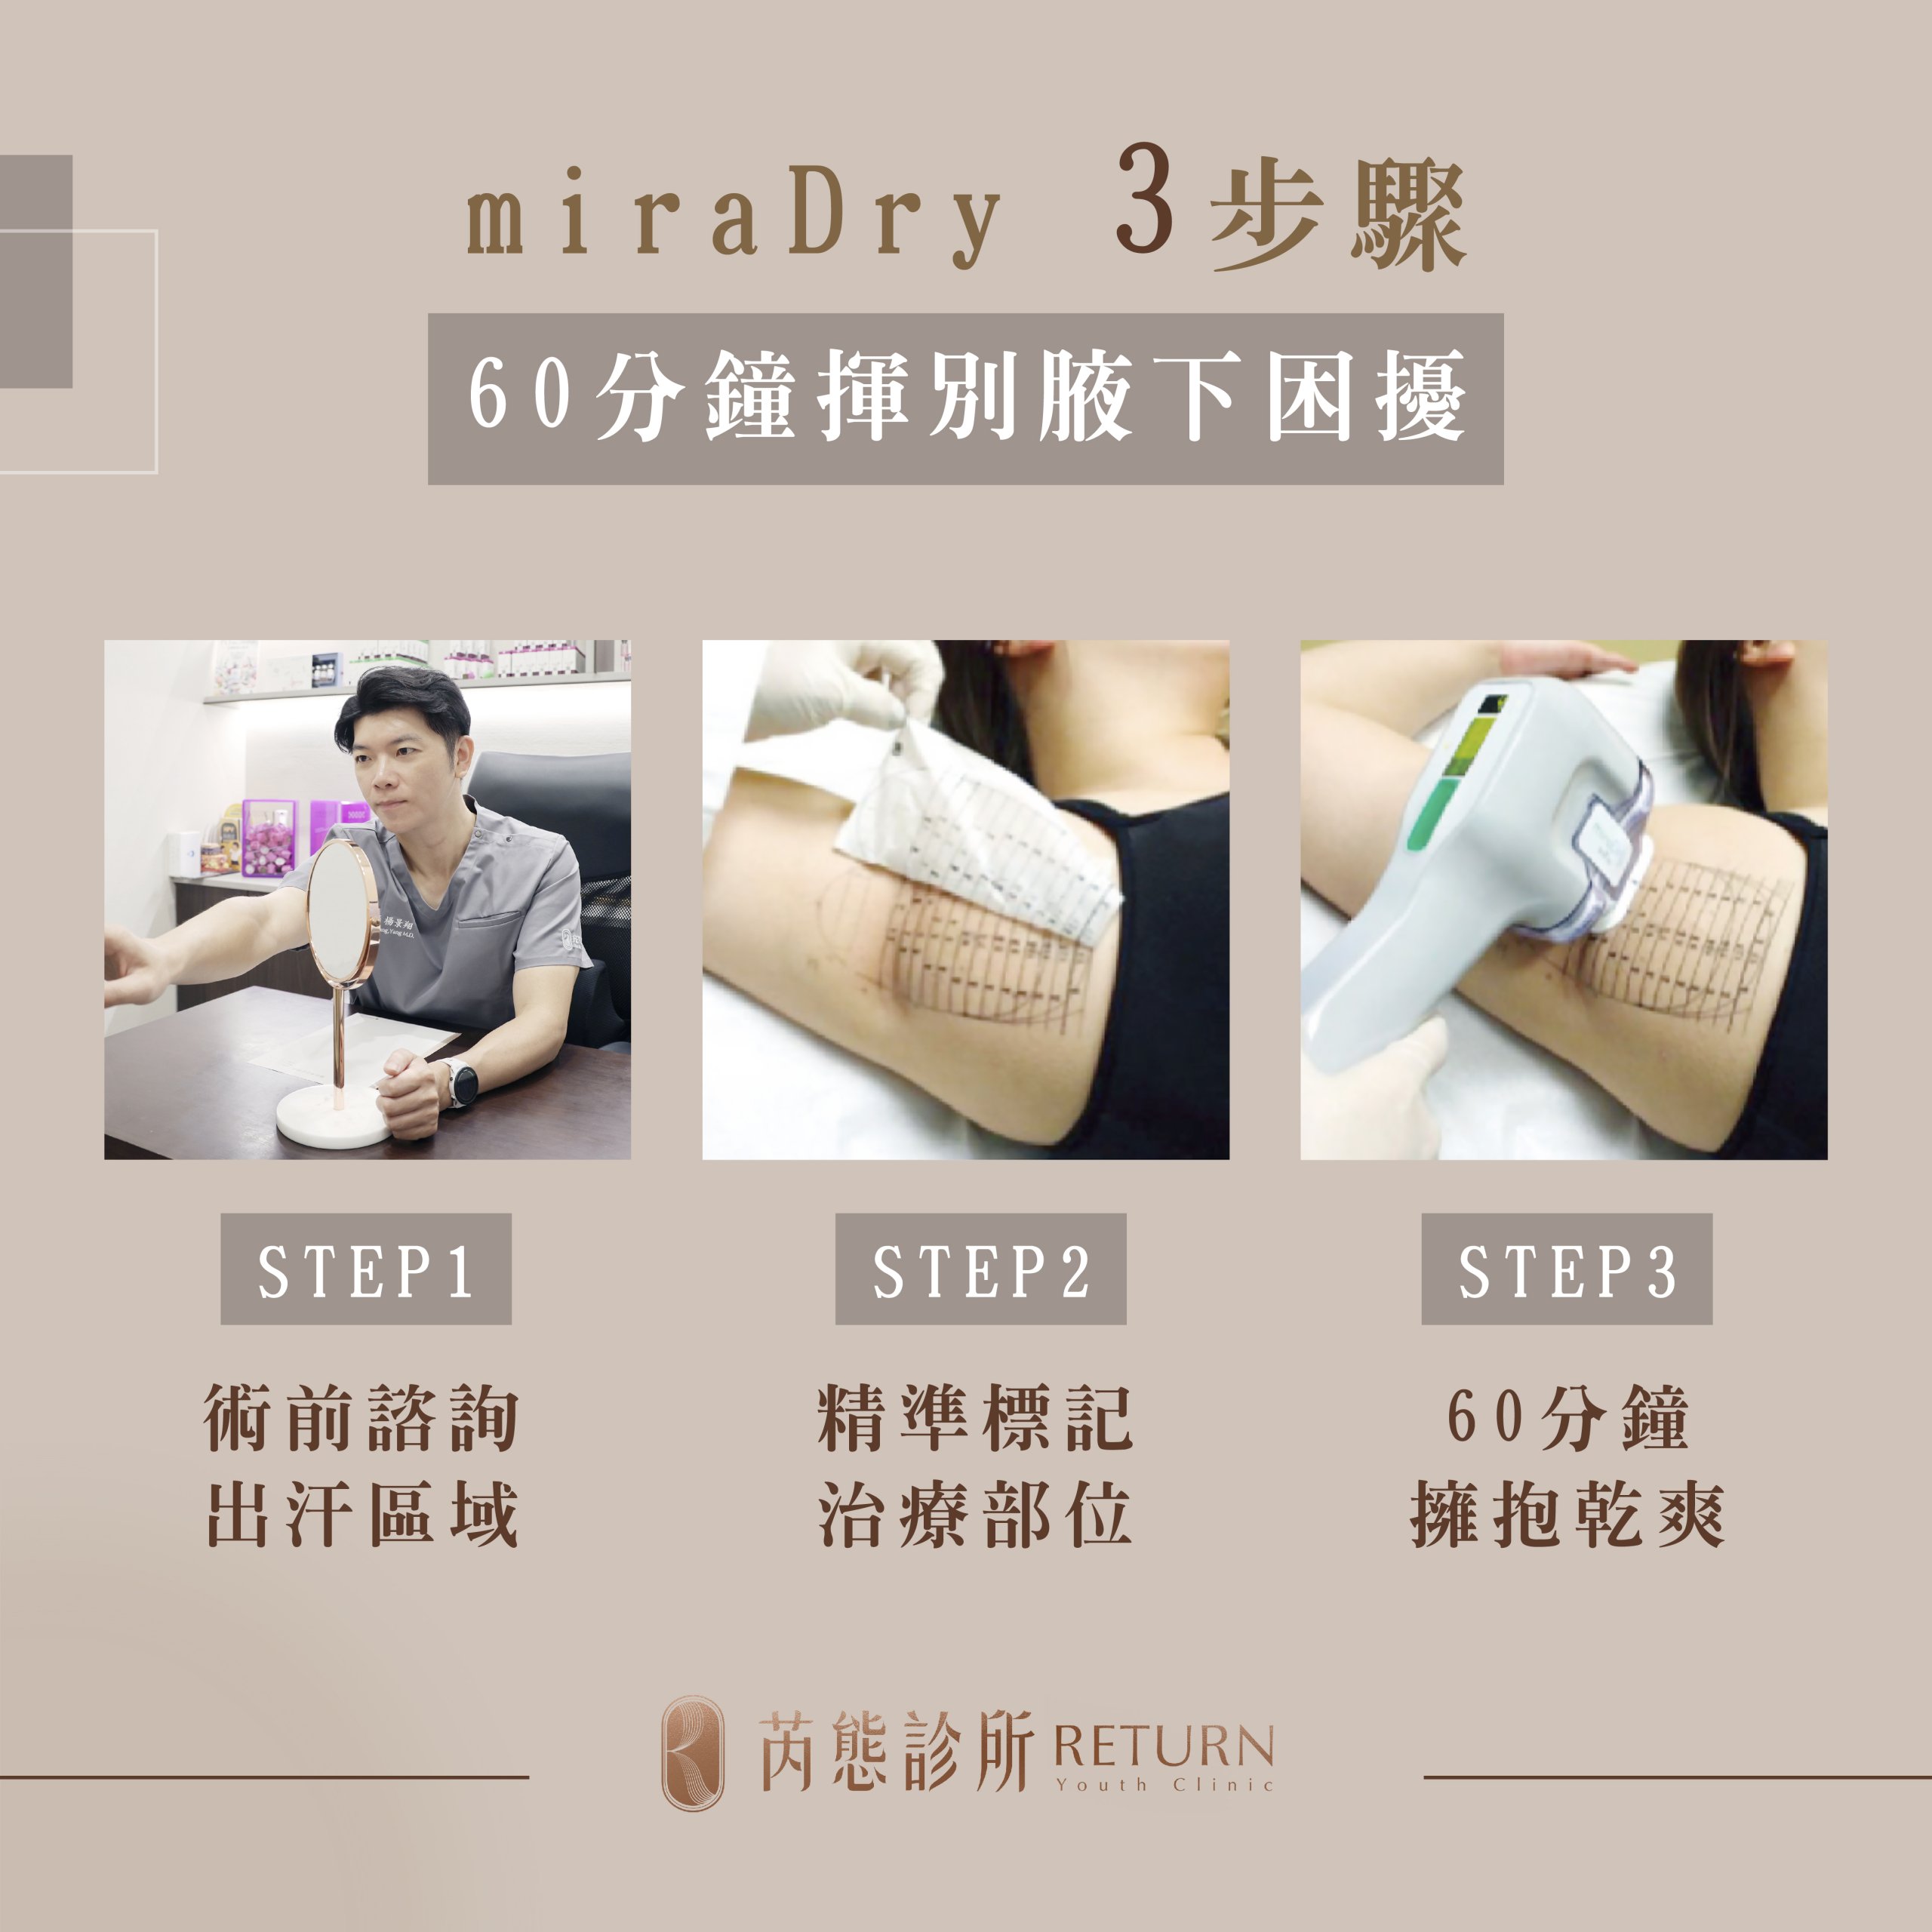 ▲圖為 miraDry 清新微波 3 步驟